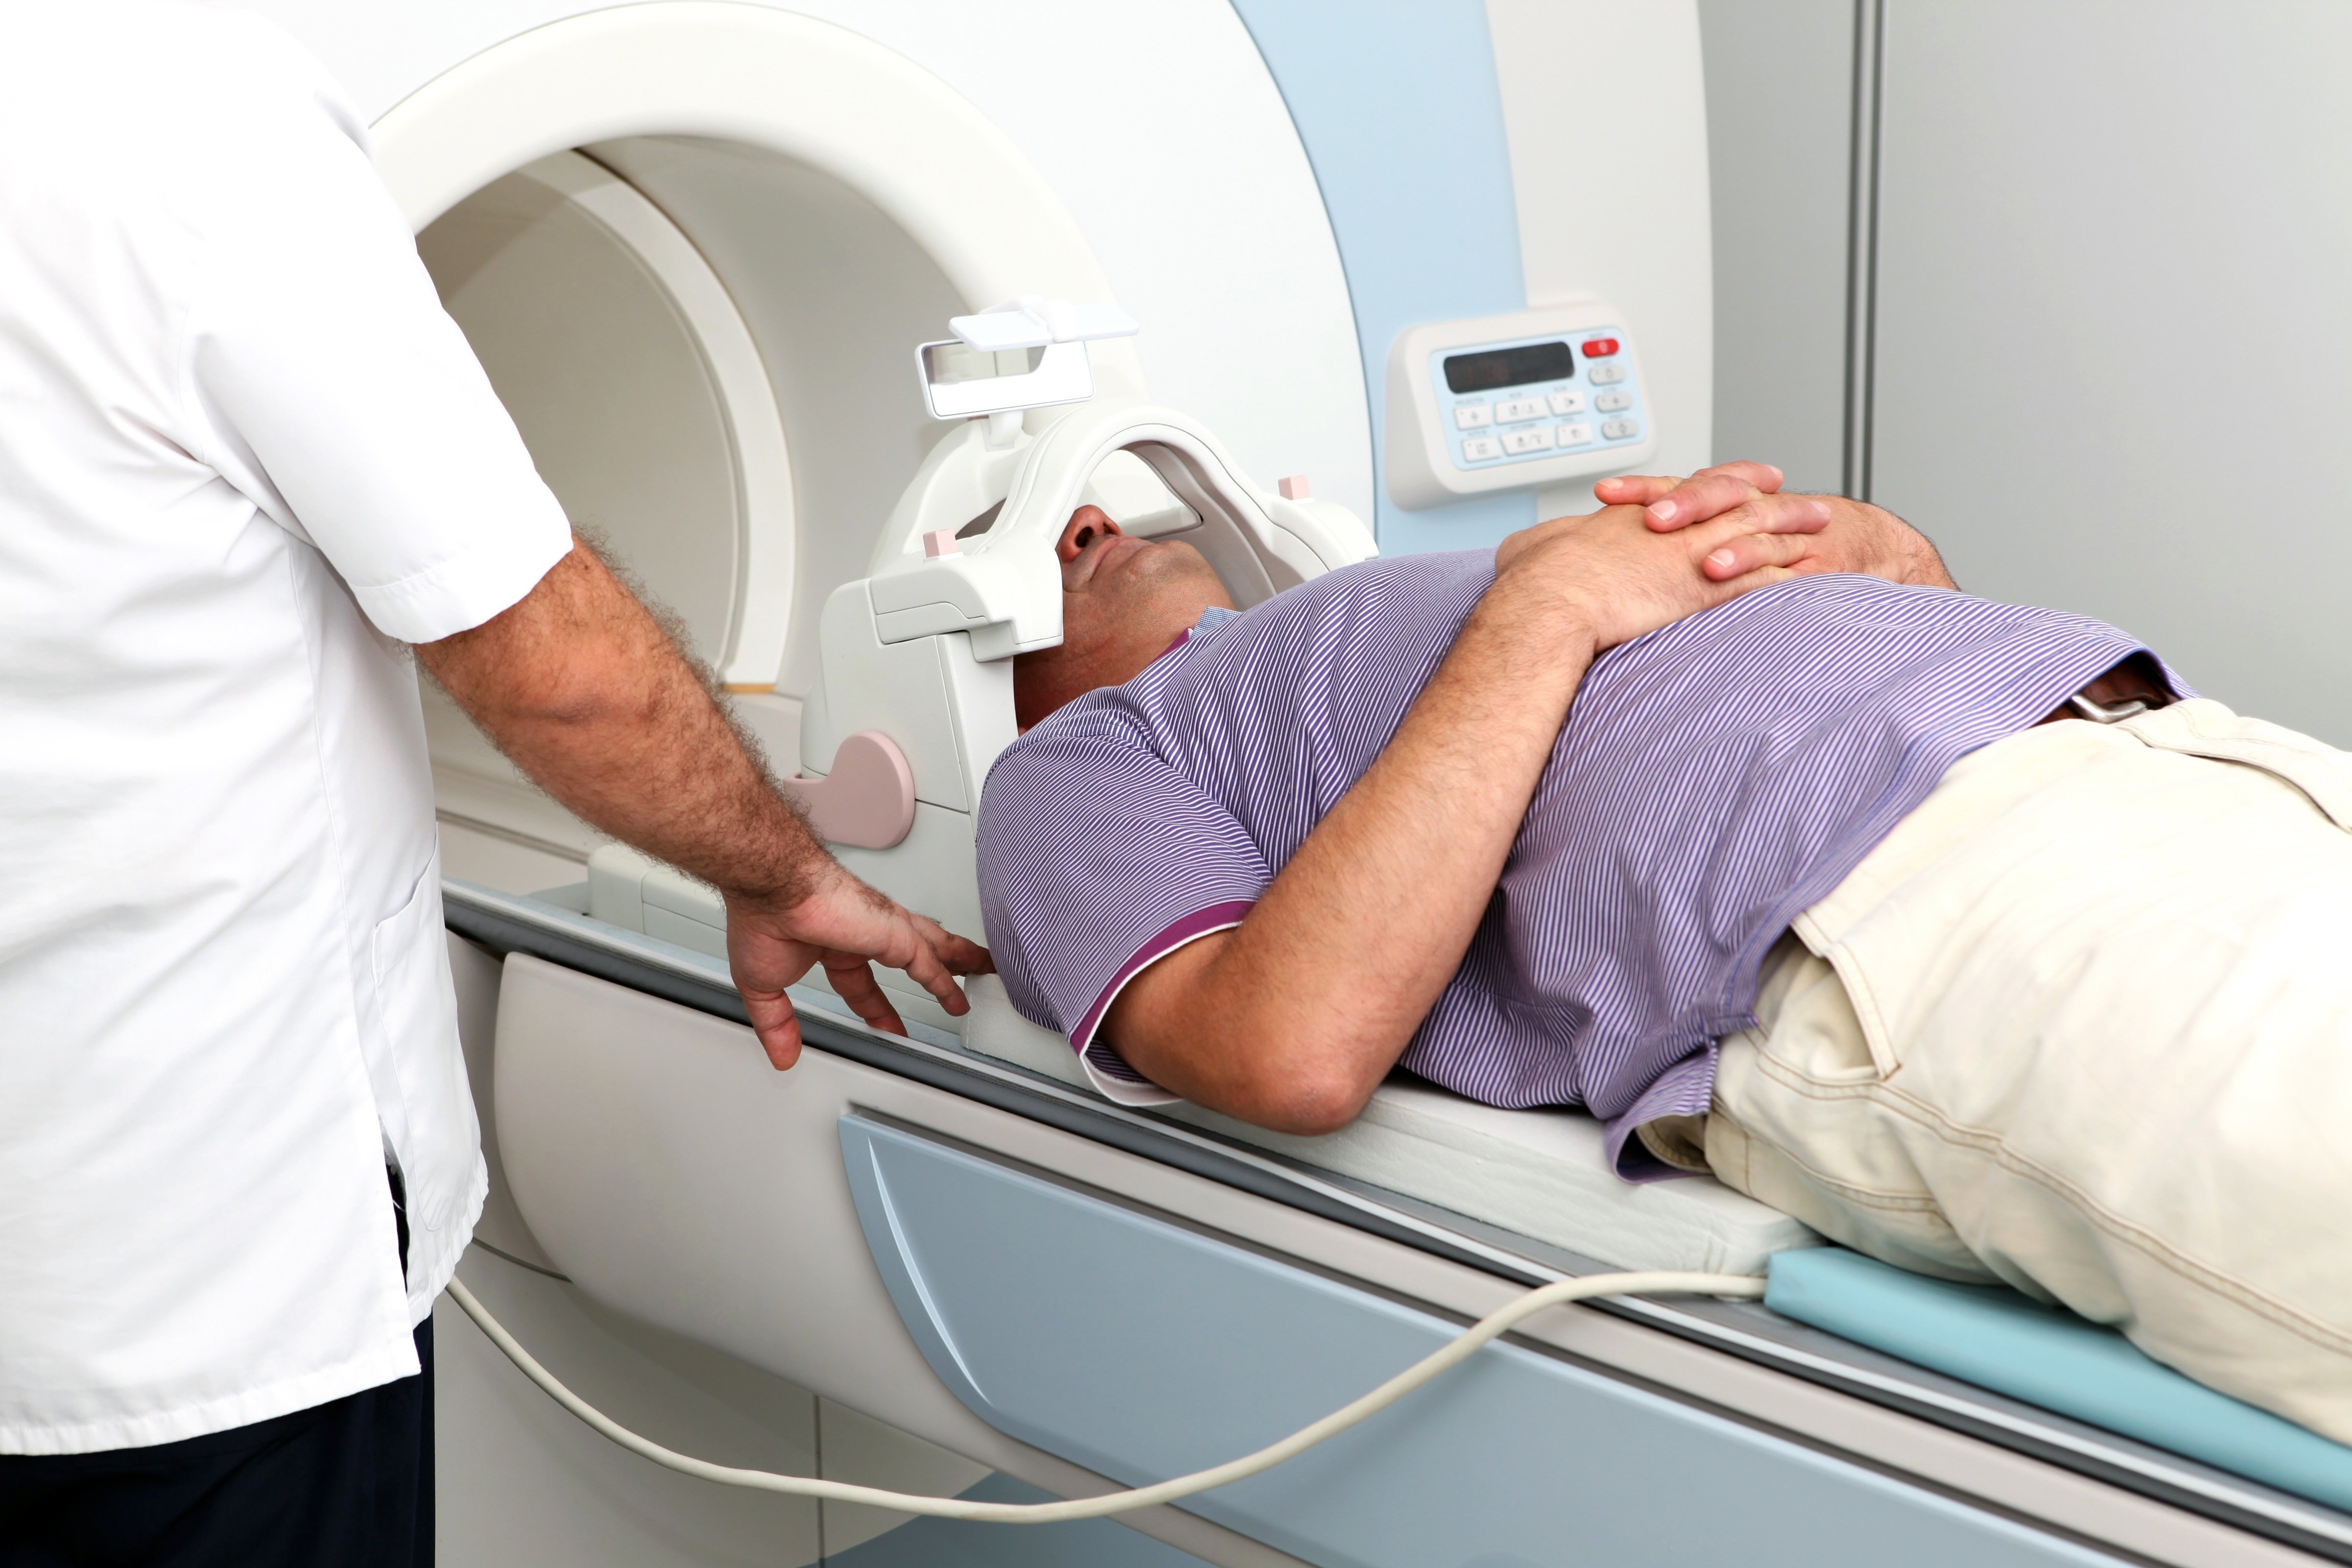 Кт головы стоя. Рентгеновская компьютерная томография (РКТ). Магнито-резонансная томография головного мозга. Магнитолучевая терапия. Магнито лучевая терапия.